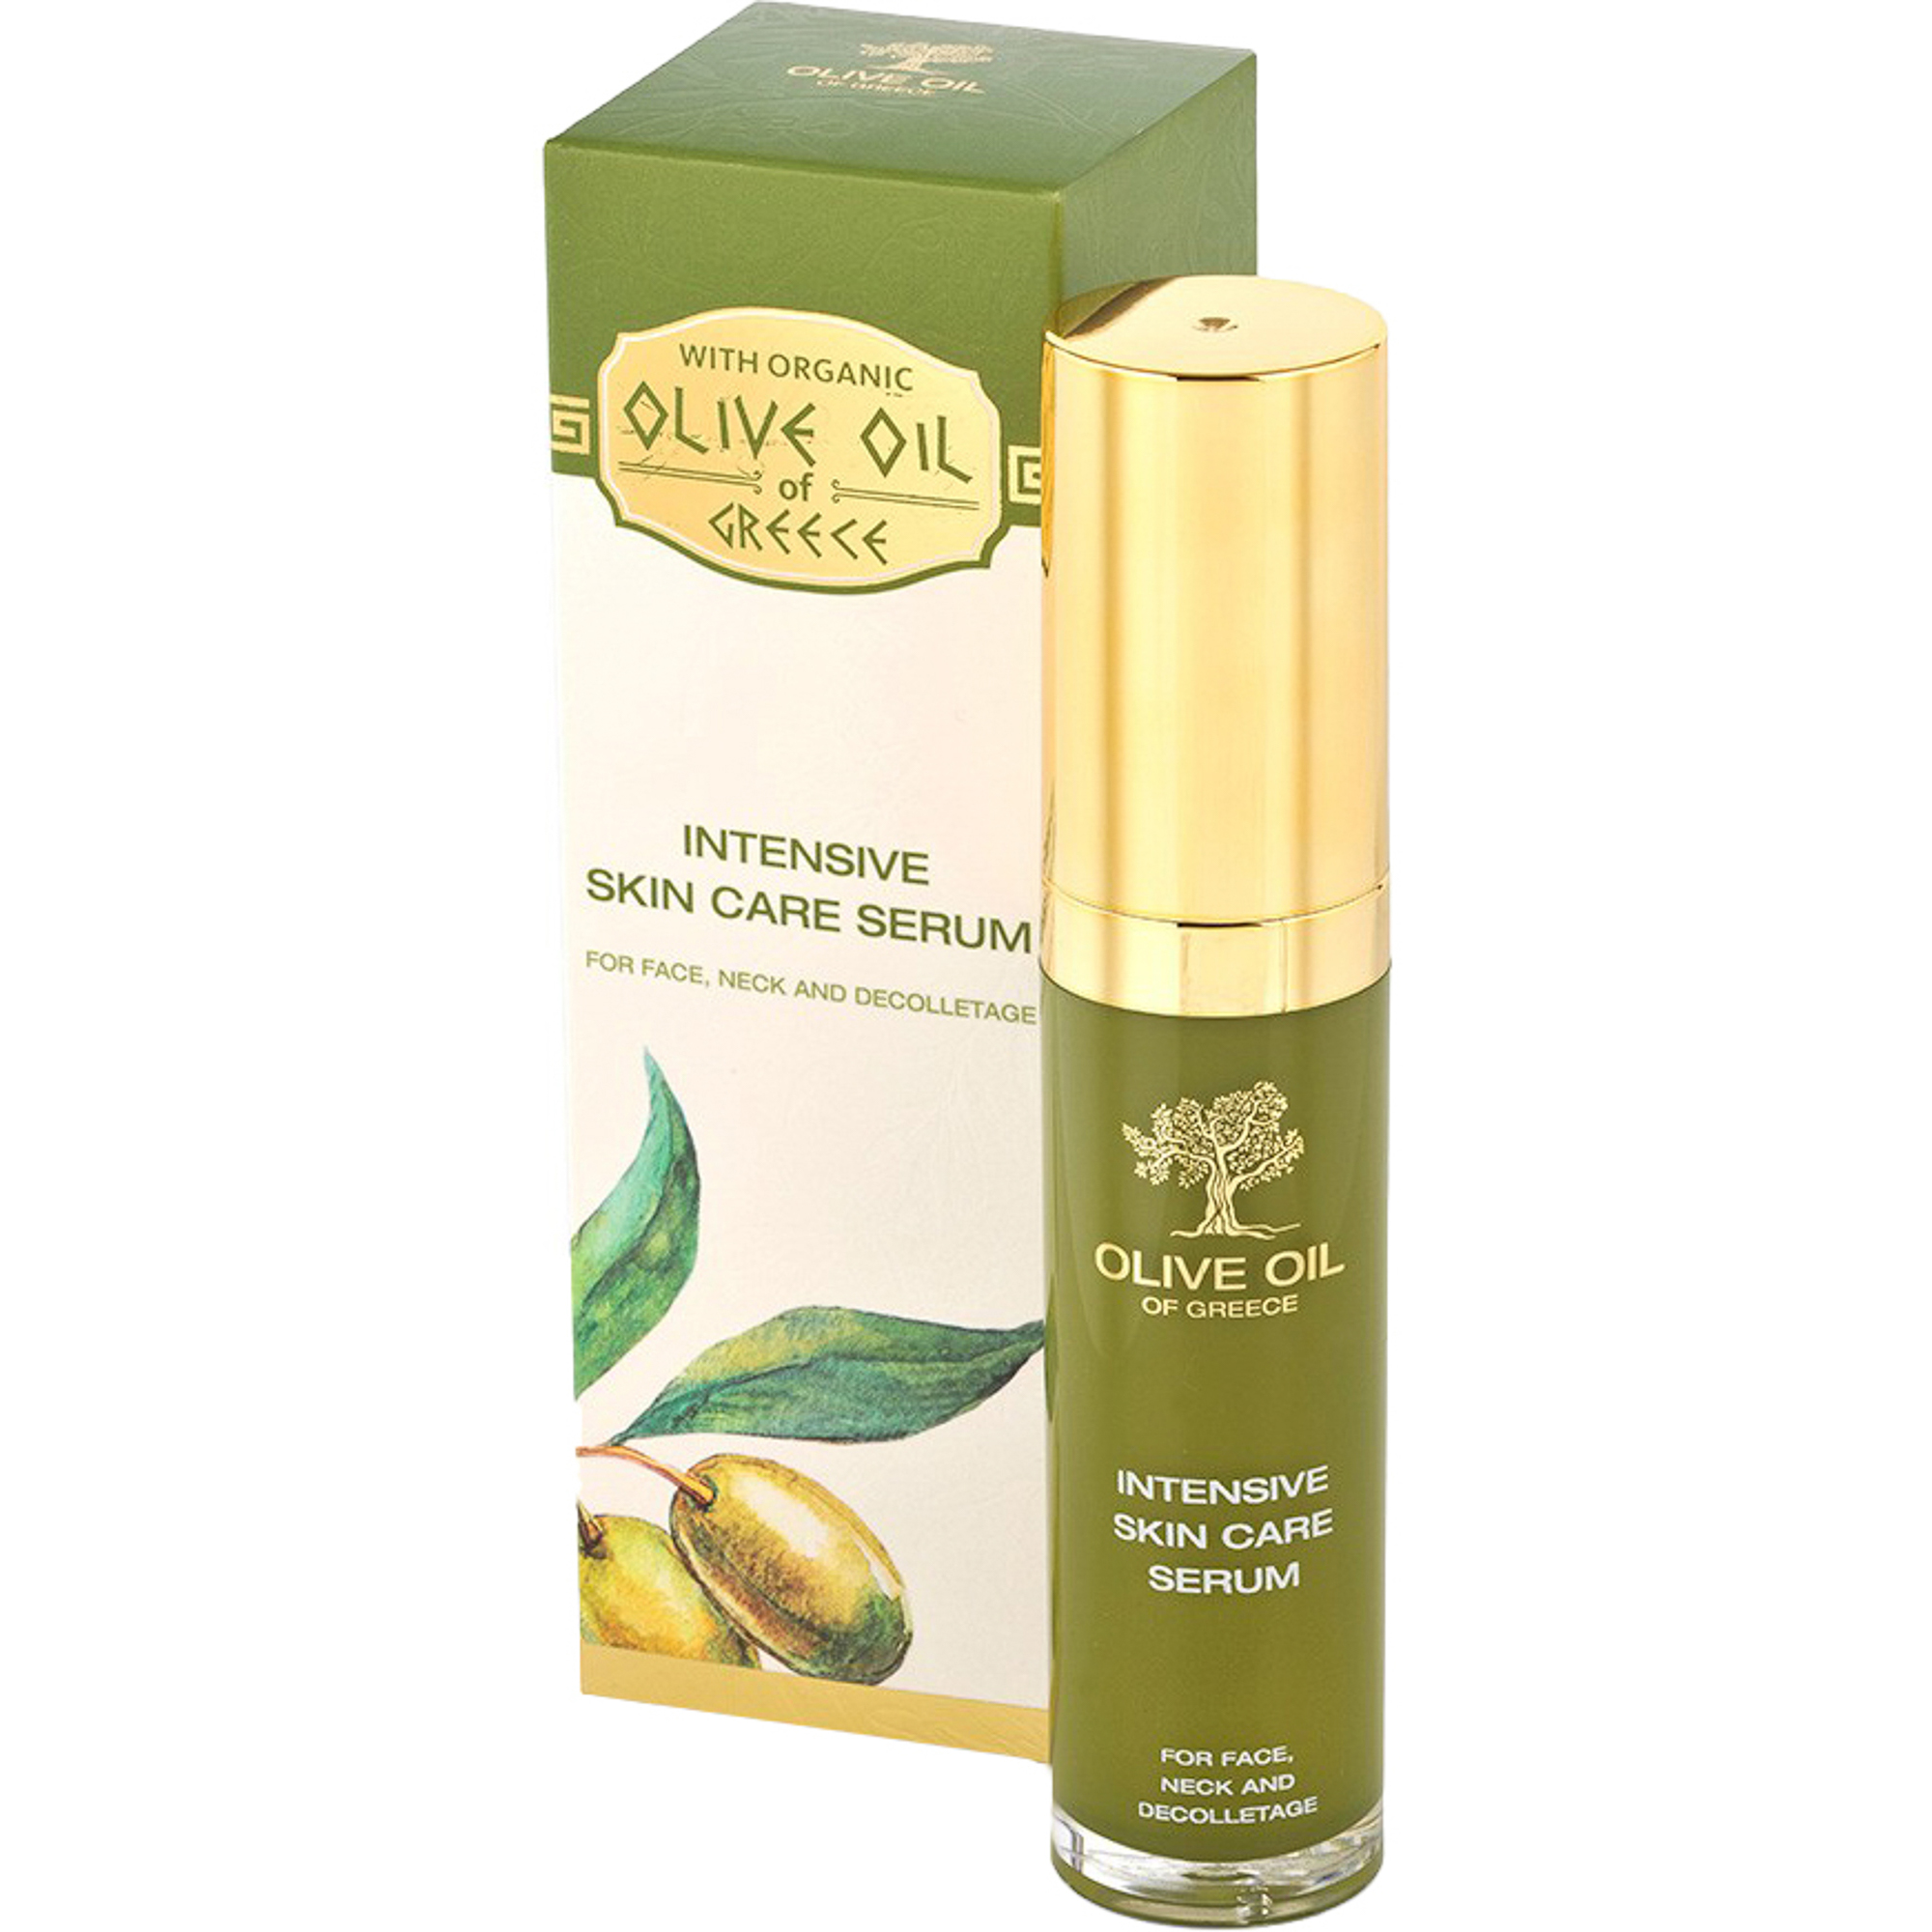 Крем масло олива. Olive Oil Defence Cream крем. Olive Oil of Greece крем. Olive косметика серум для лица. Сыворотка Olive для лица.